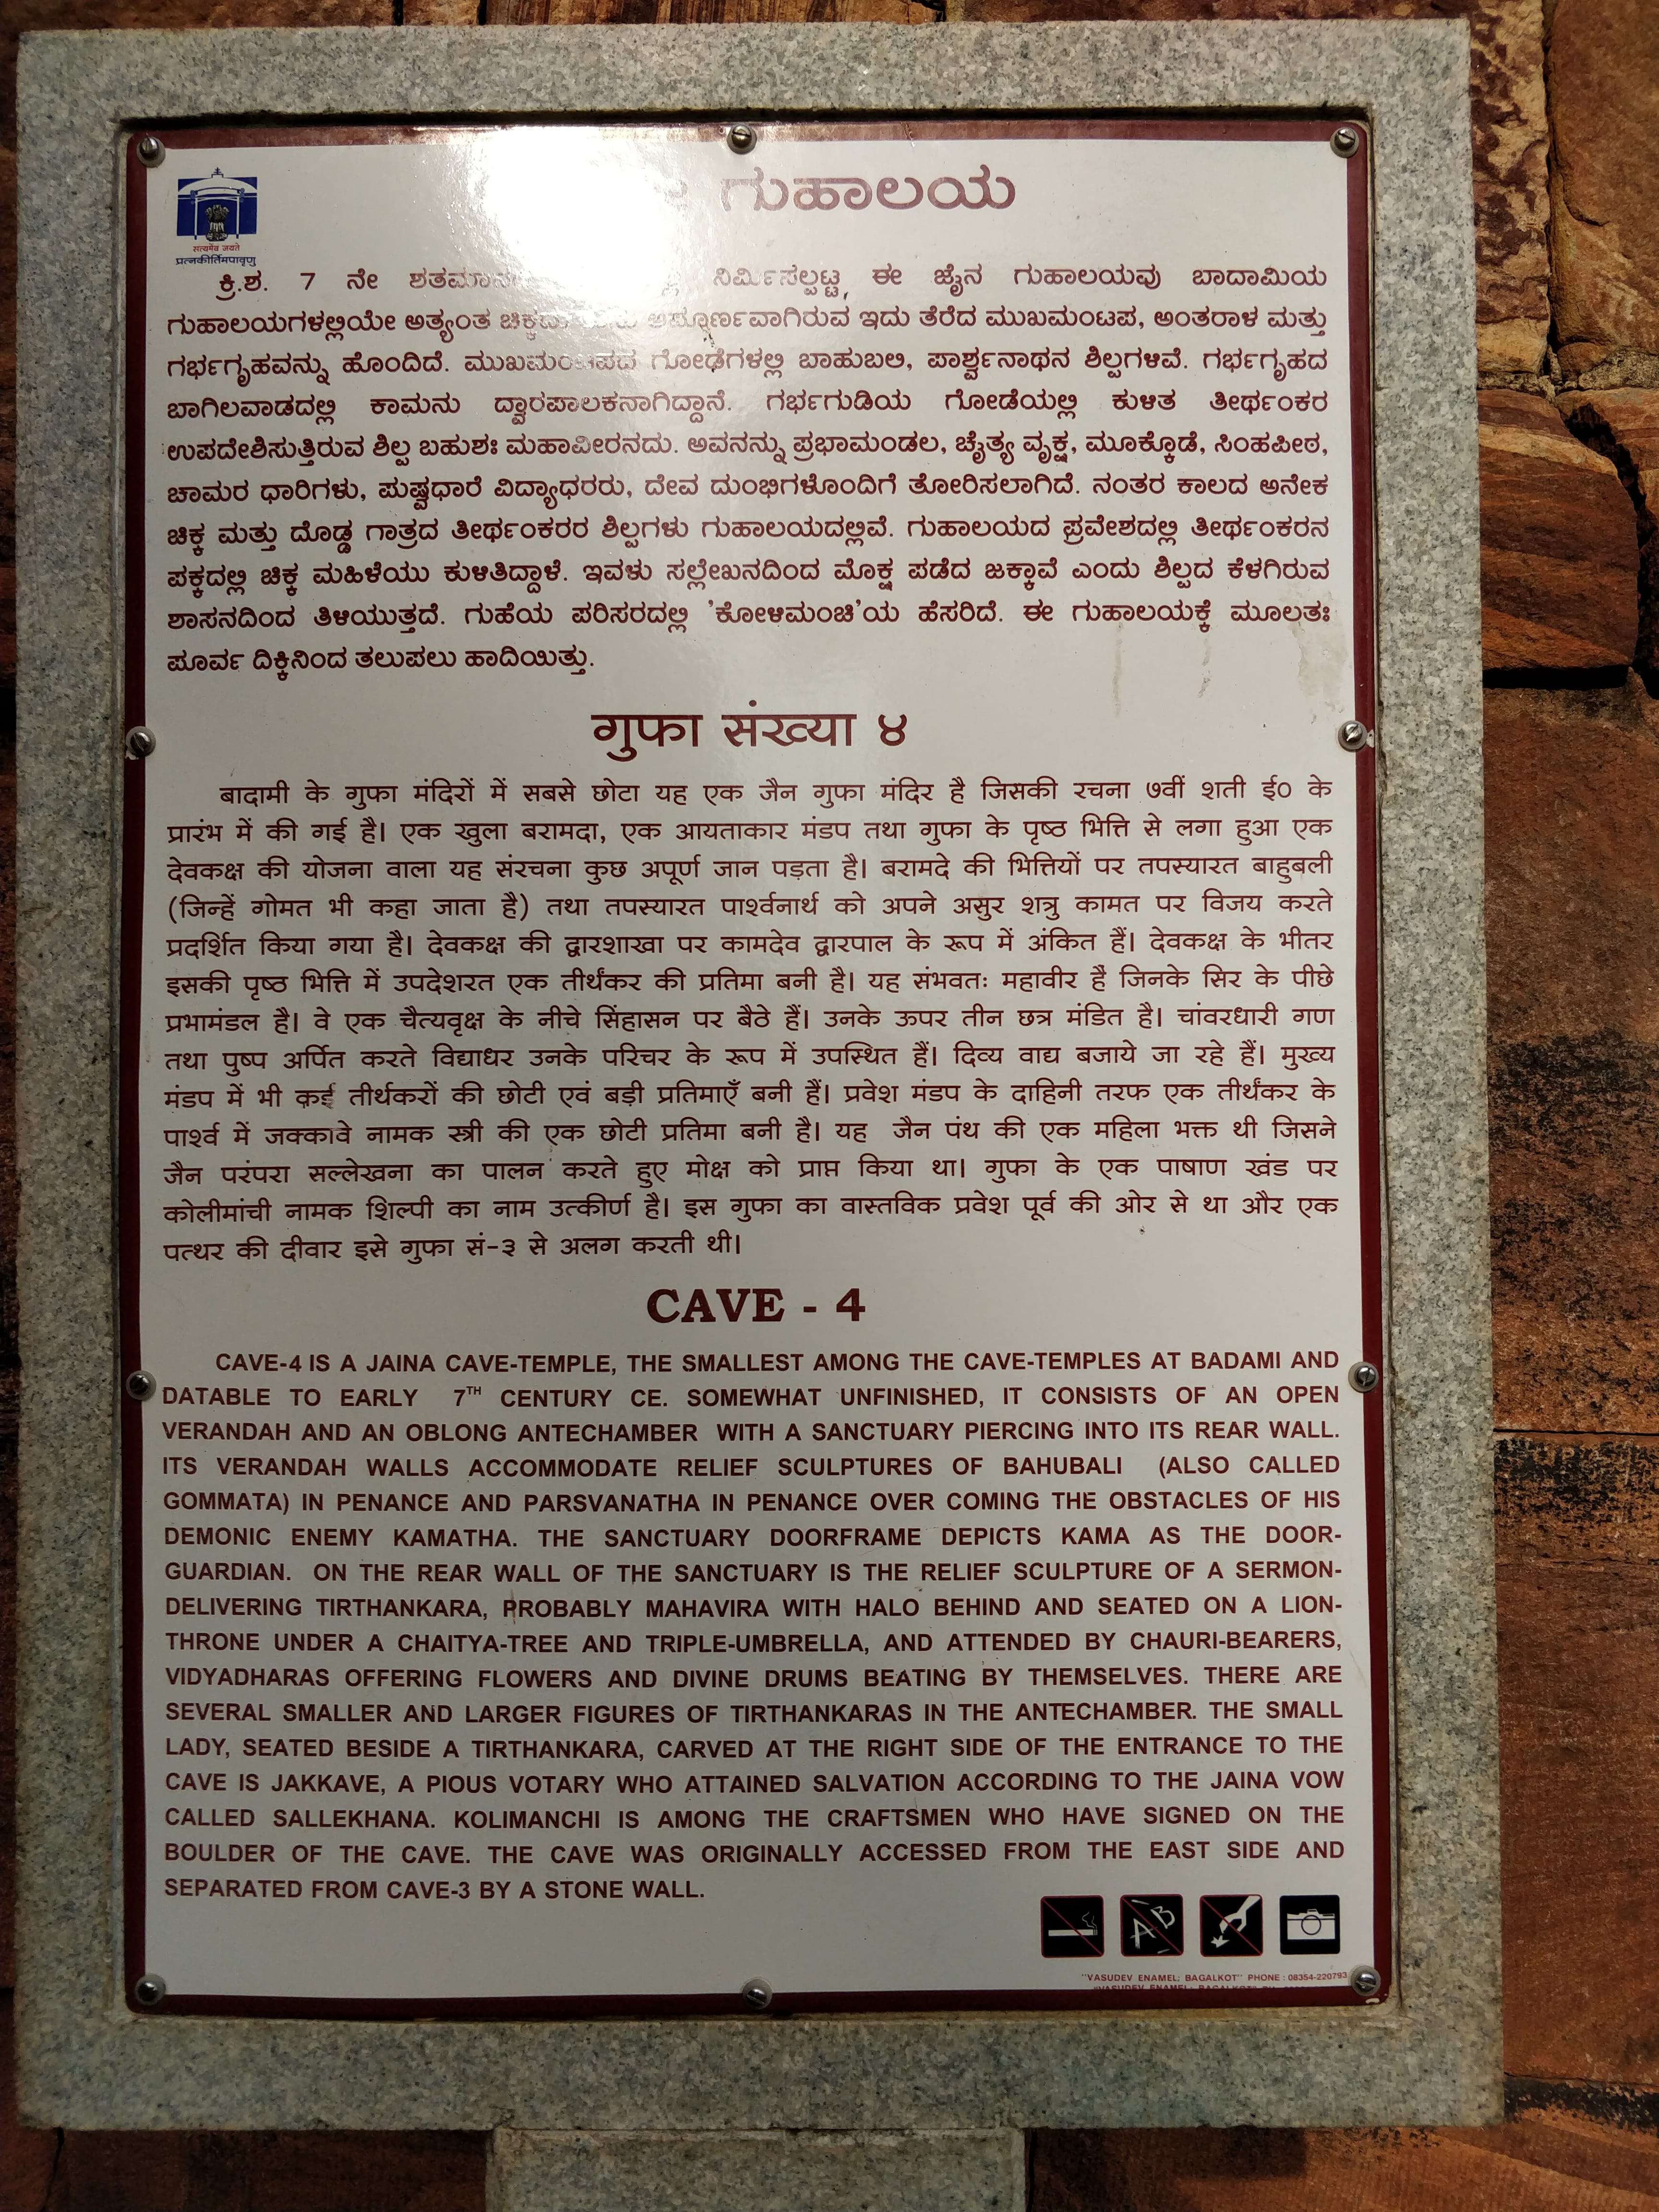 info board - Fourth cave temple